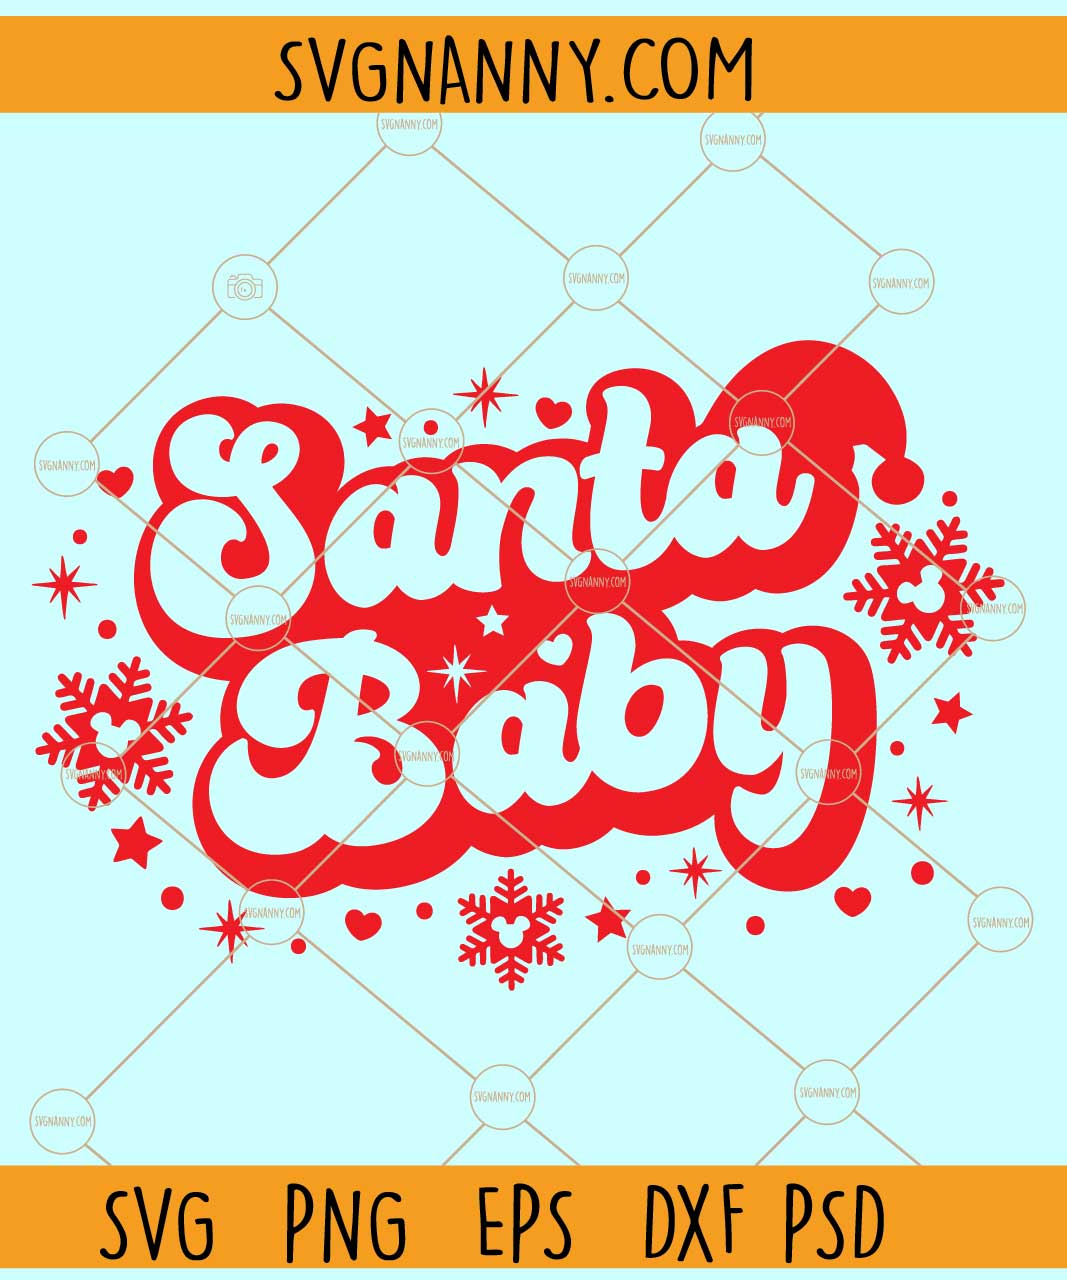 Santa baby retro SVG